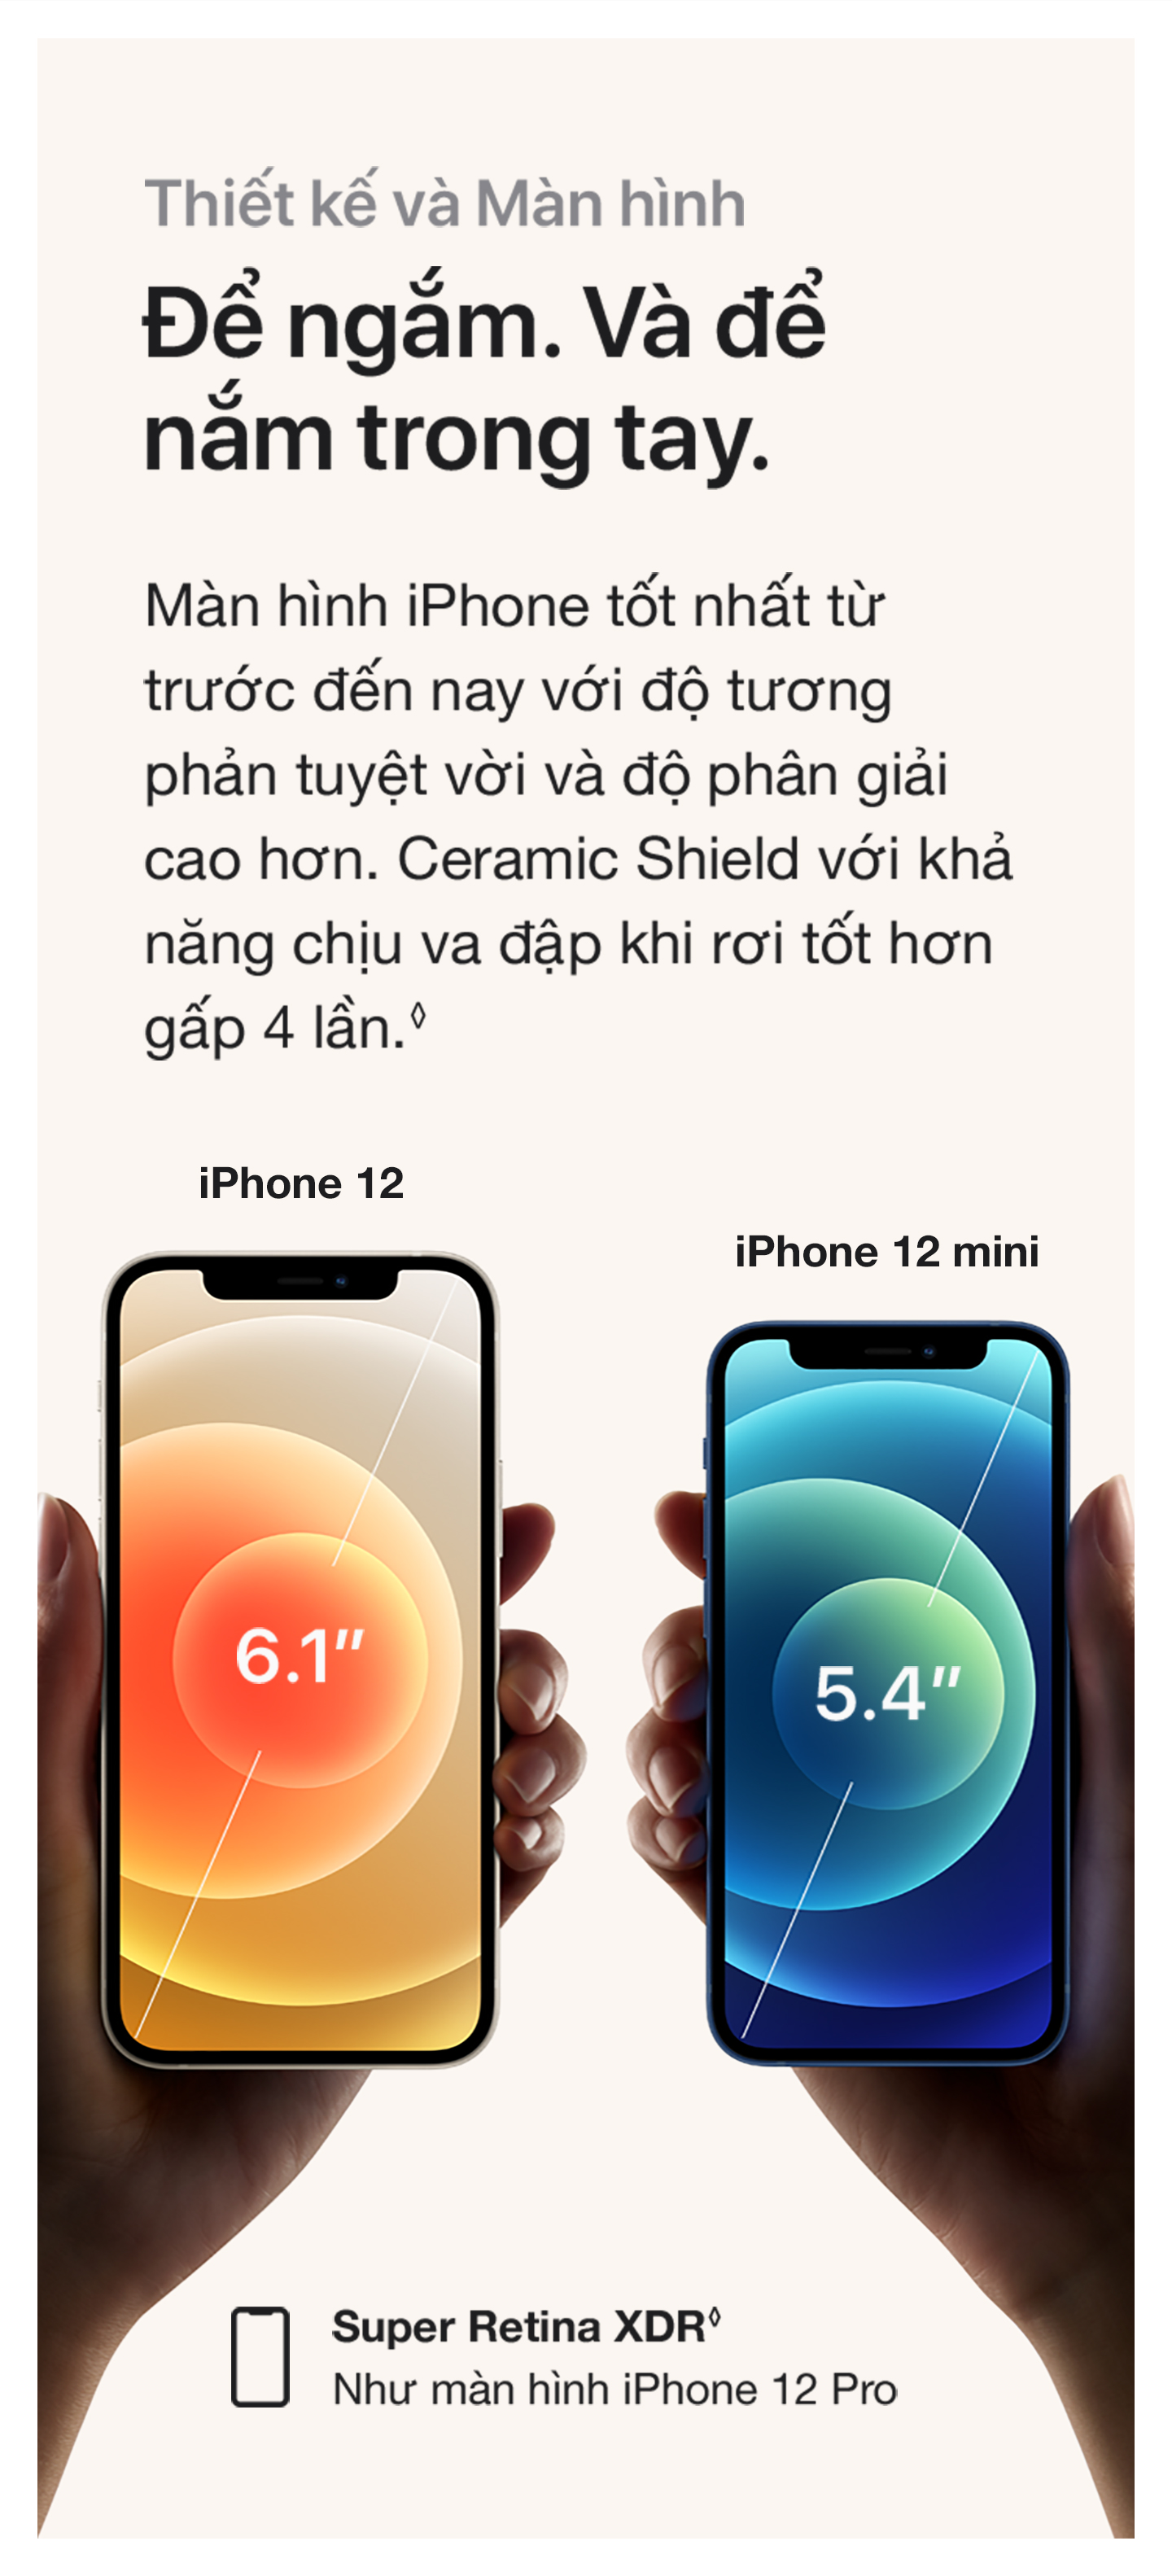 iPhone 12 mini Thiết kế và Màn hình